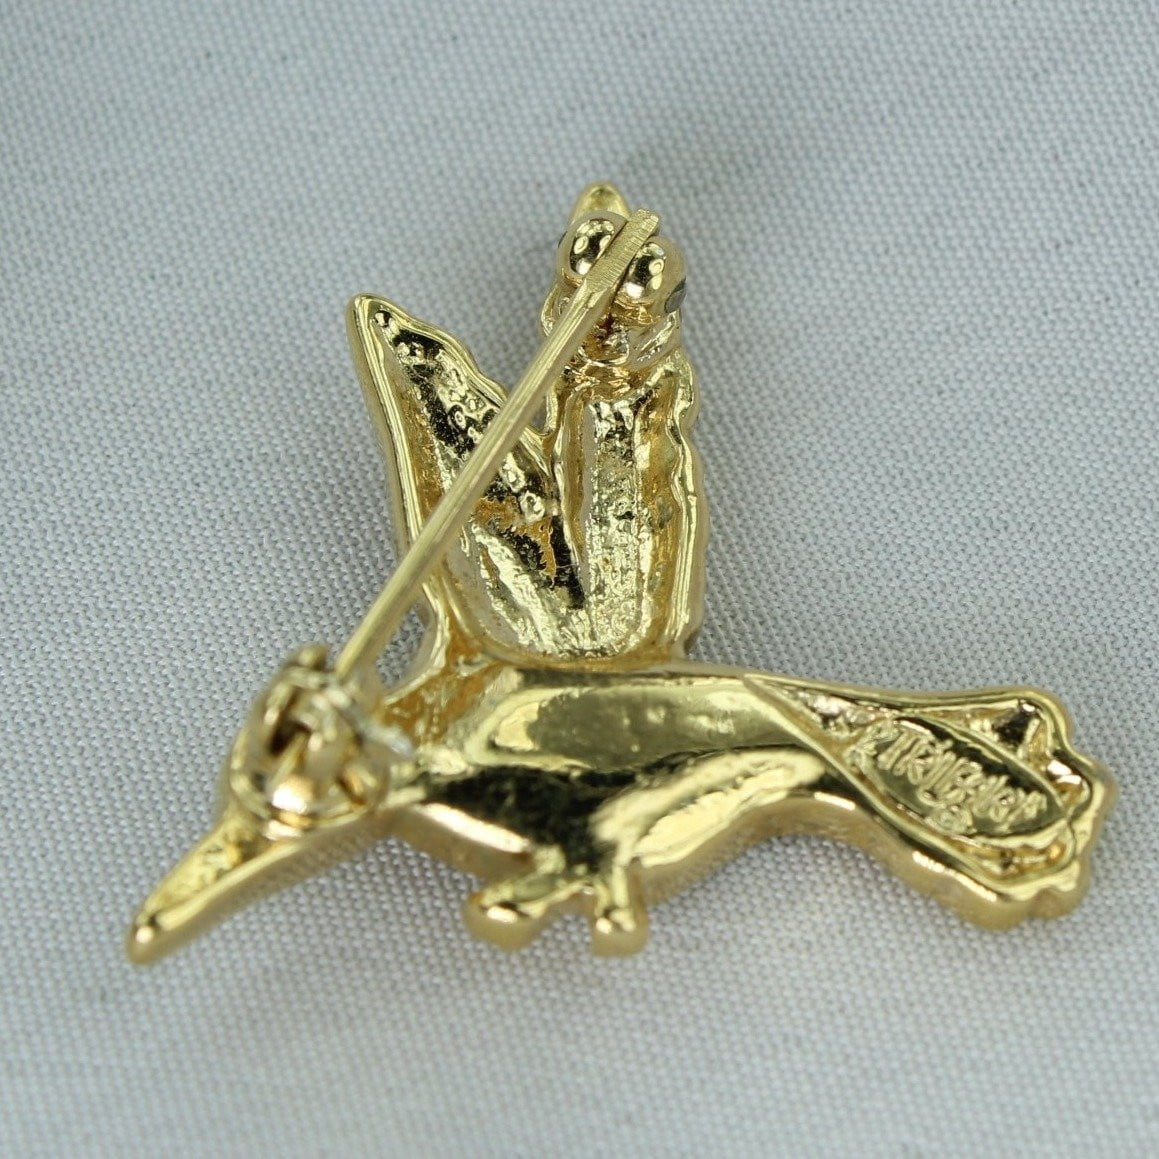 Vintage TRIFARI Pin Tiny Gold Tone Rhinestone Bird designer